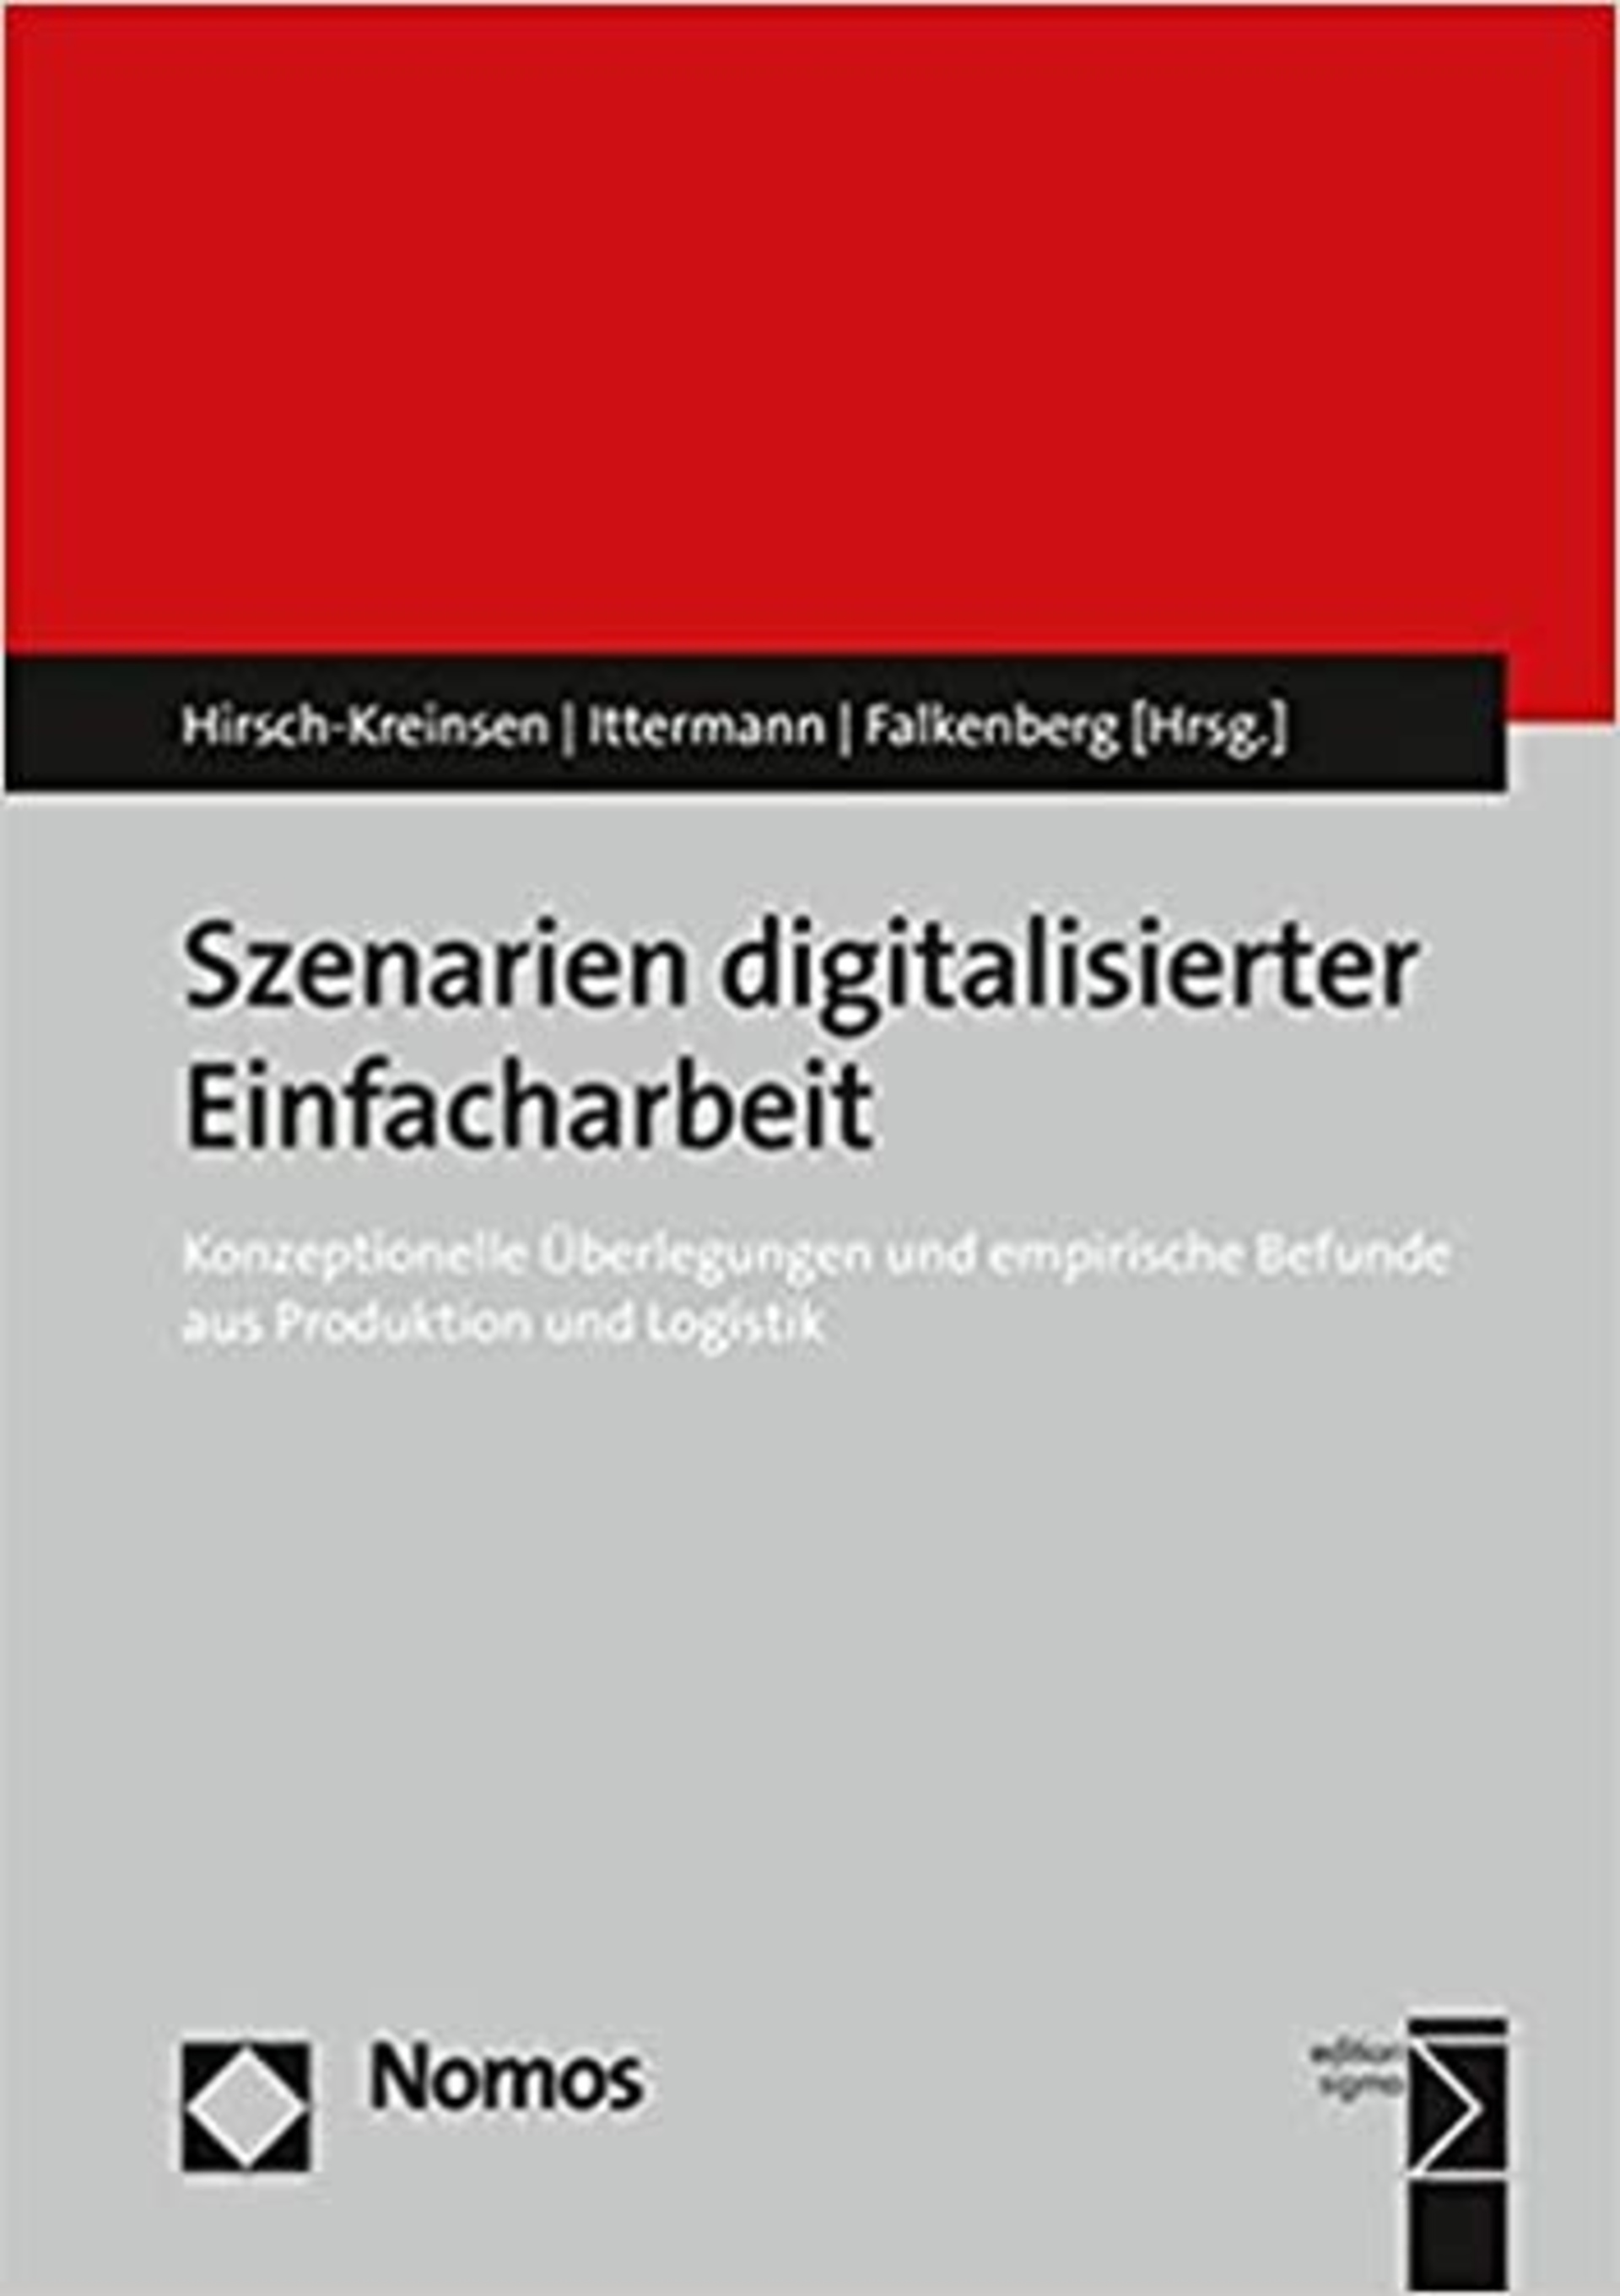 Hirsch-Kreinsen, Hartmut/Ittermann, Peter/Falkenberg, Jonathan (Hg.) (2019):